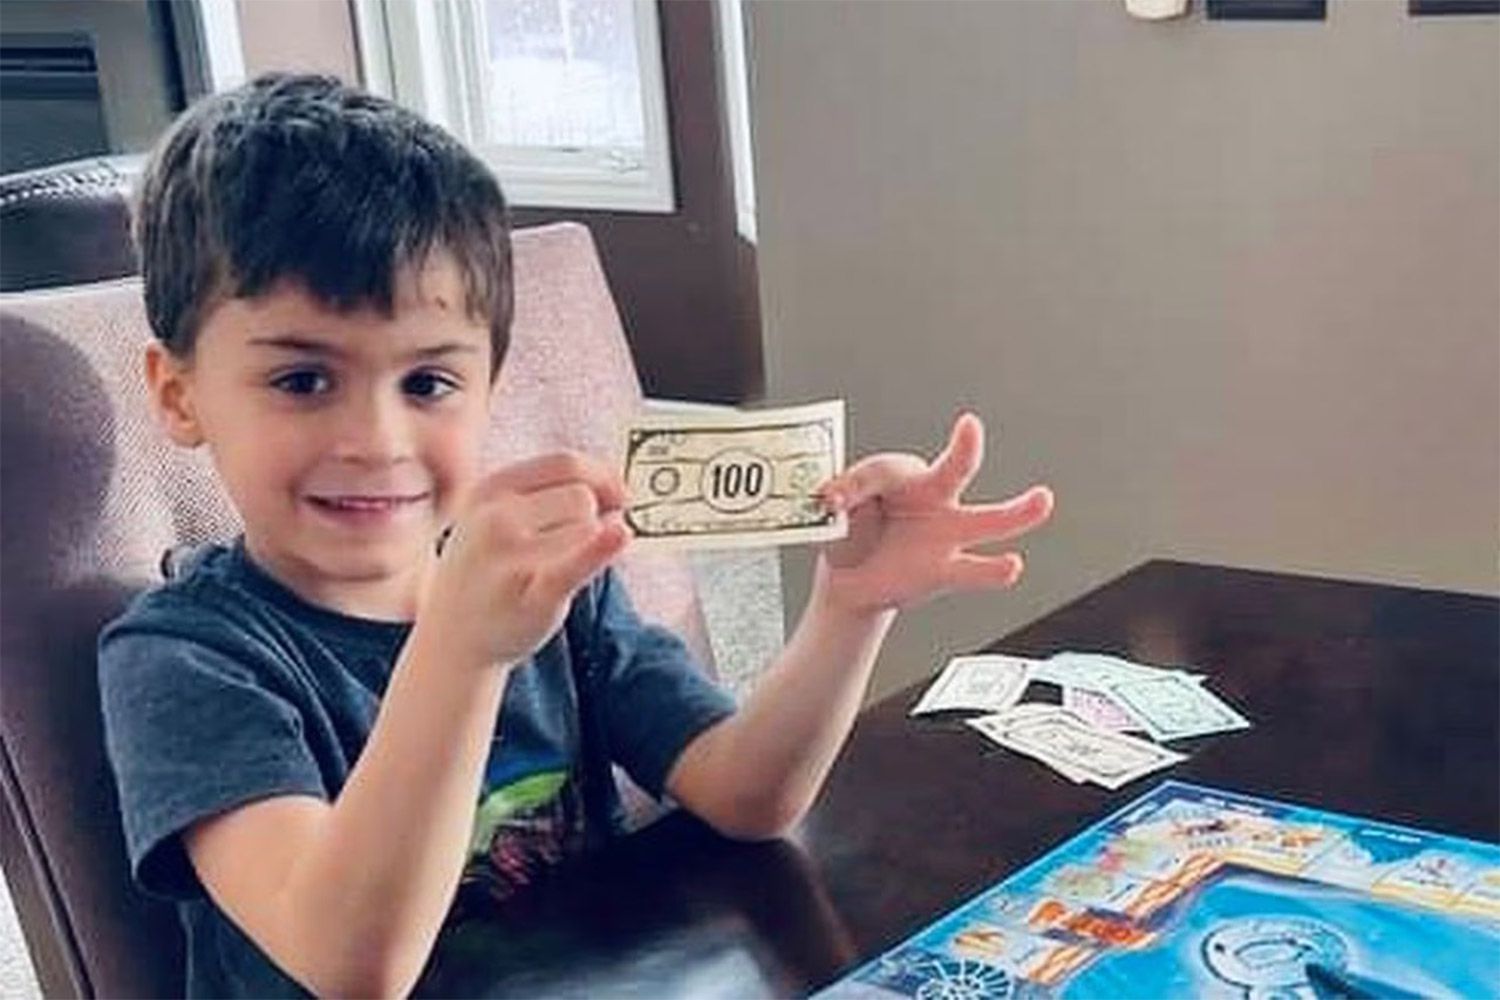 6-वर्षीय मिशिगन लड़के ने अपने पिता के फोन के साथ ग्रुभ पर $ 1,000 मूल्य का खाना ऑर्डर किया